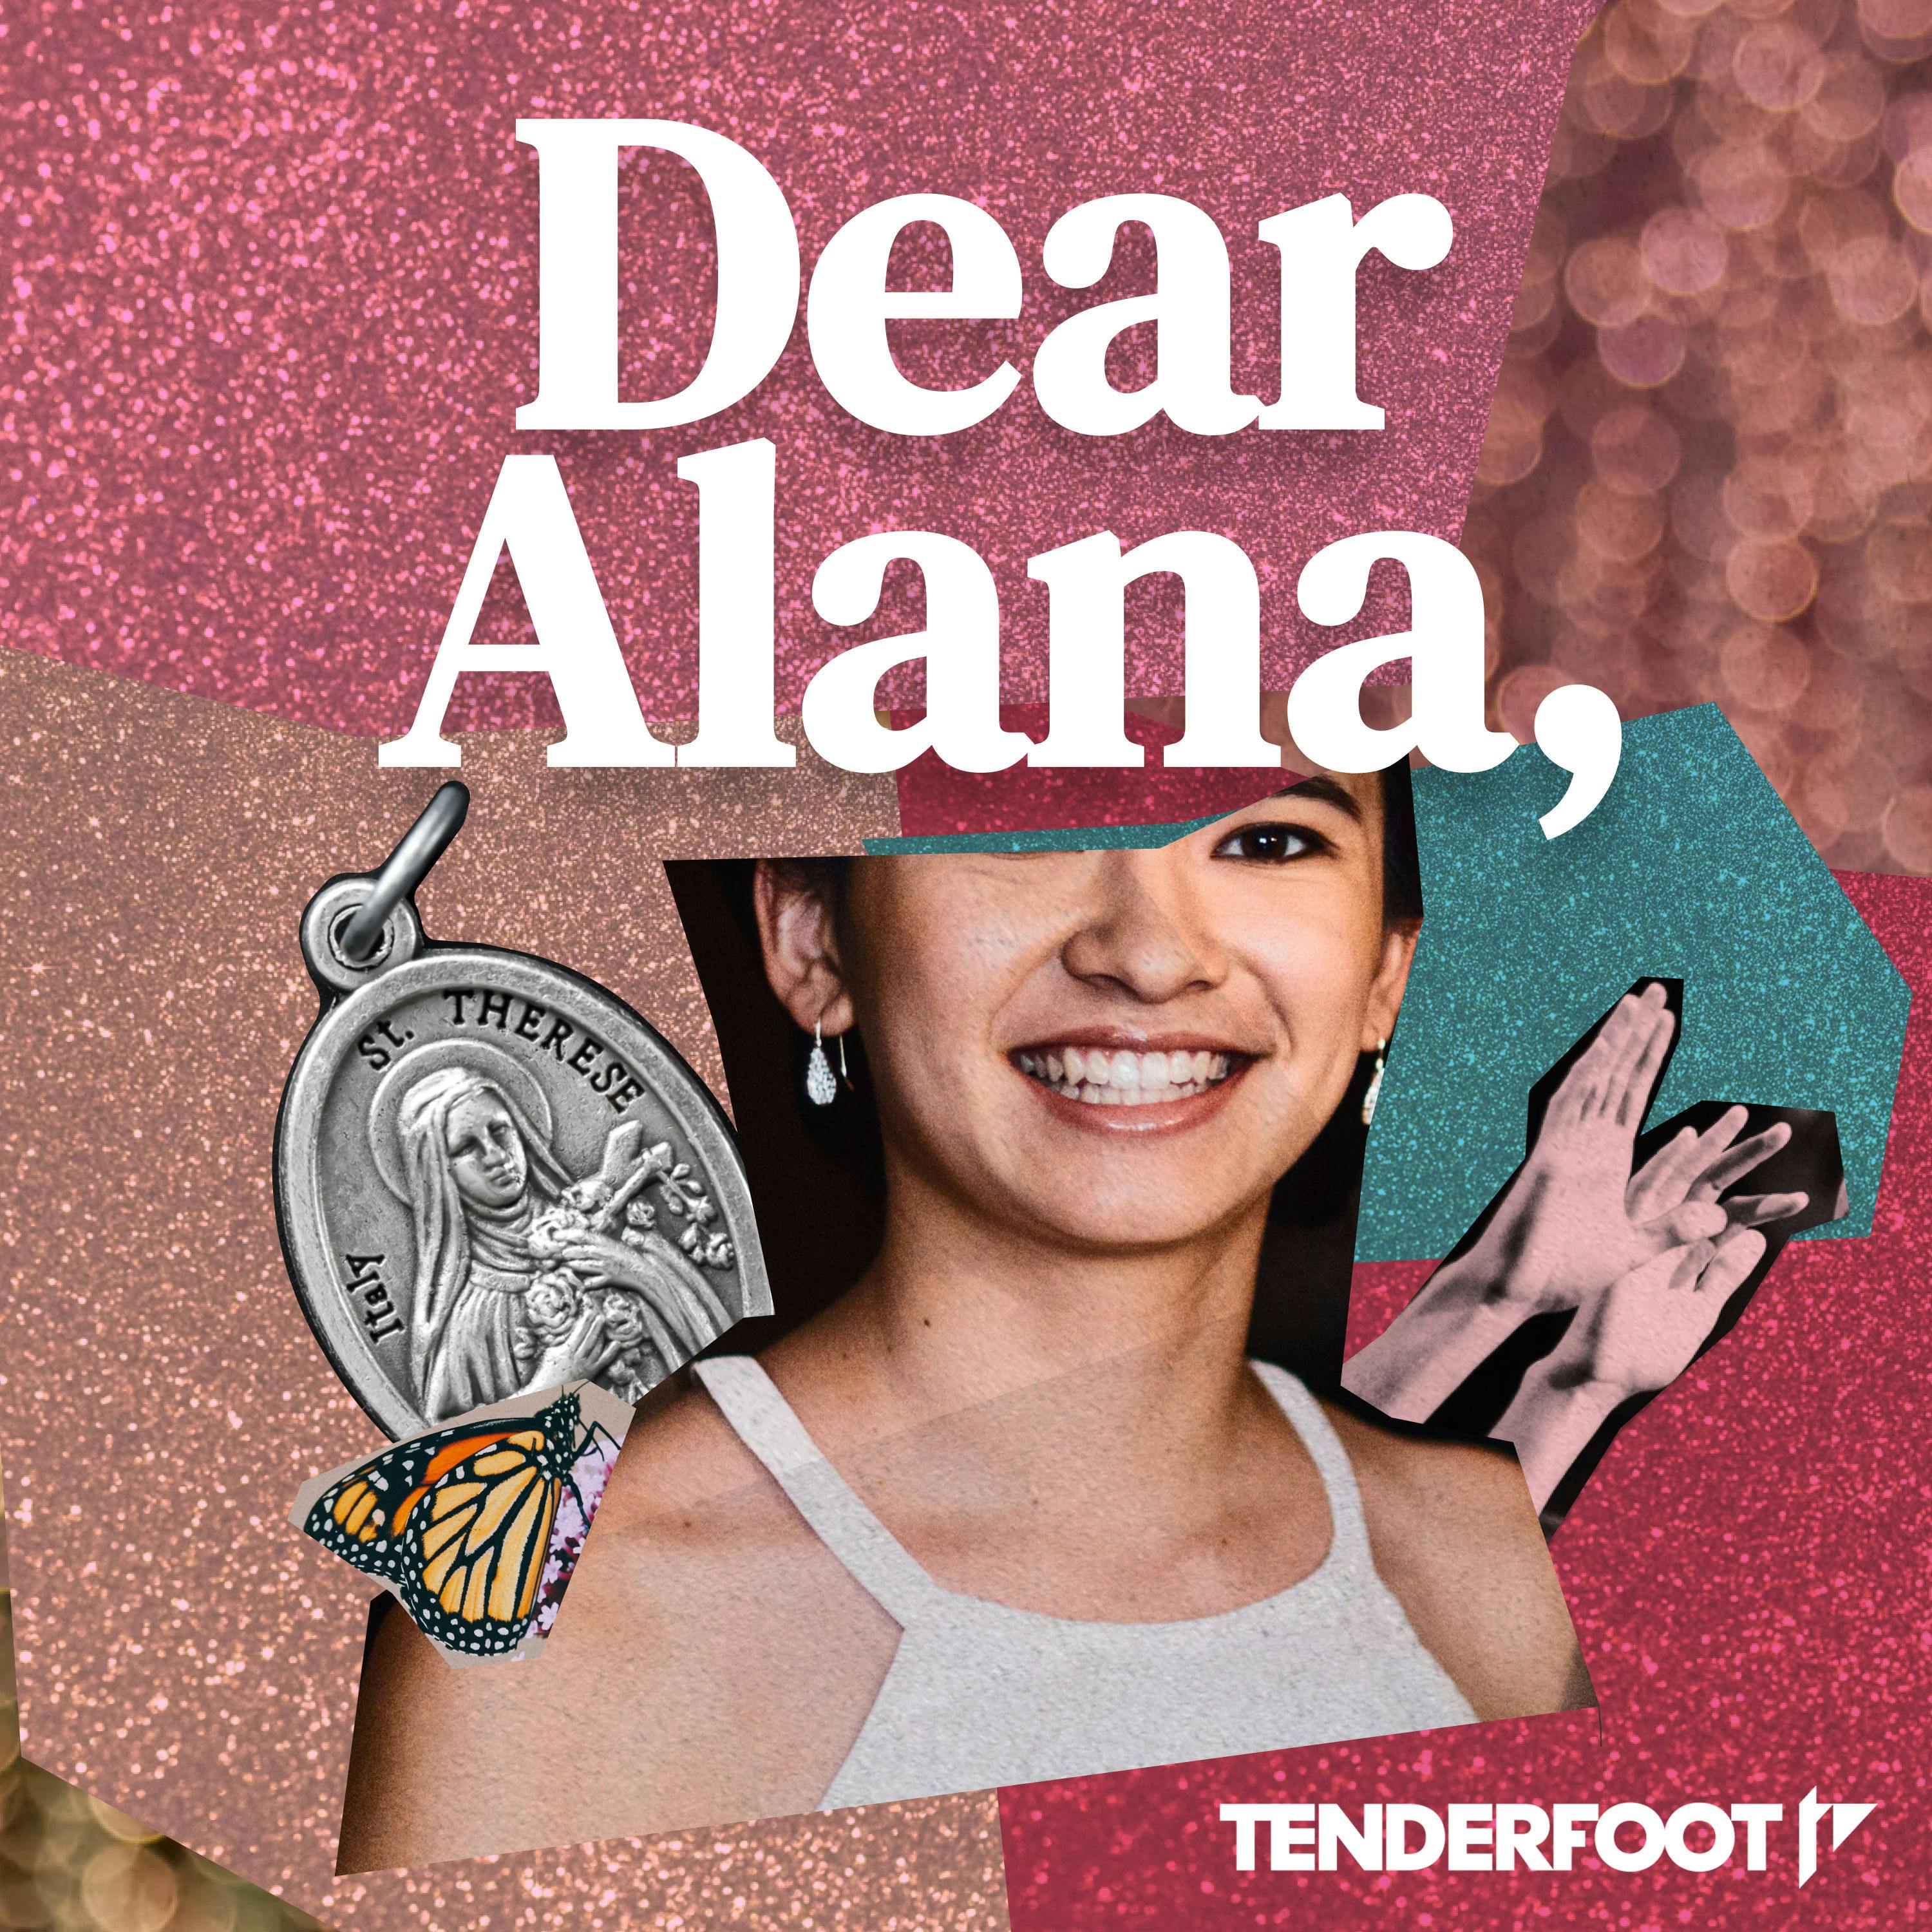 Dear Alana